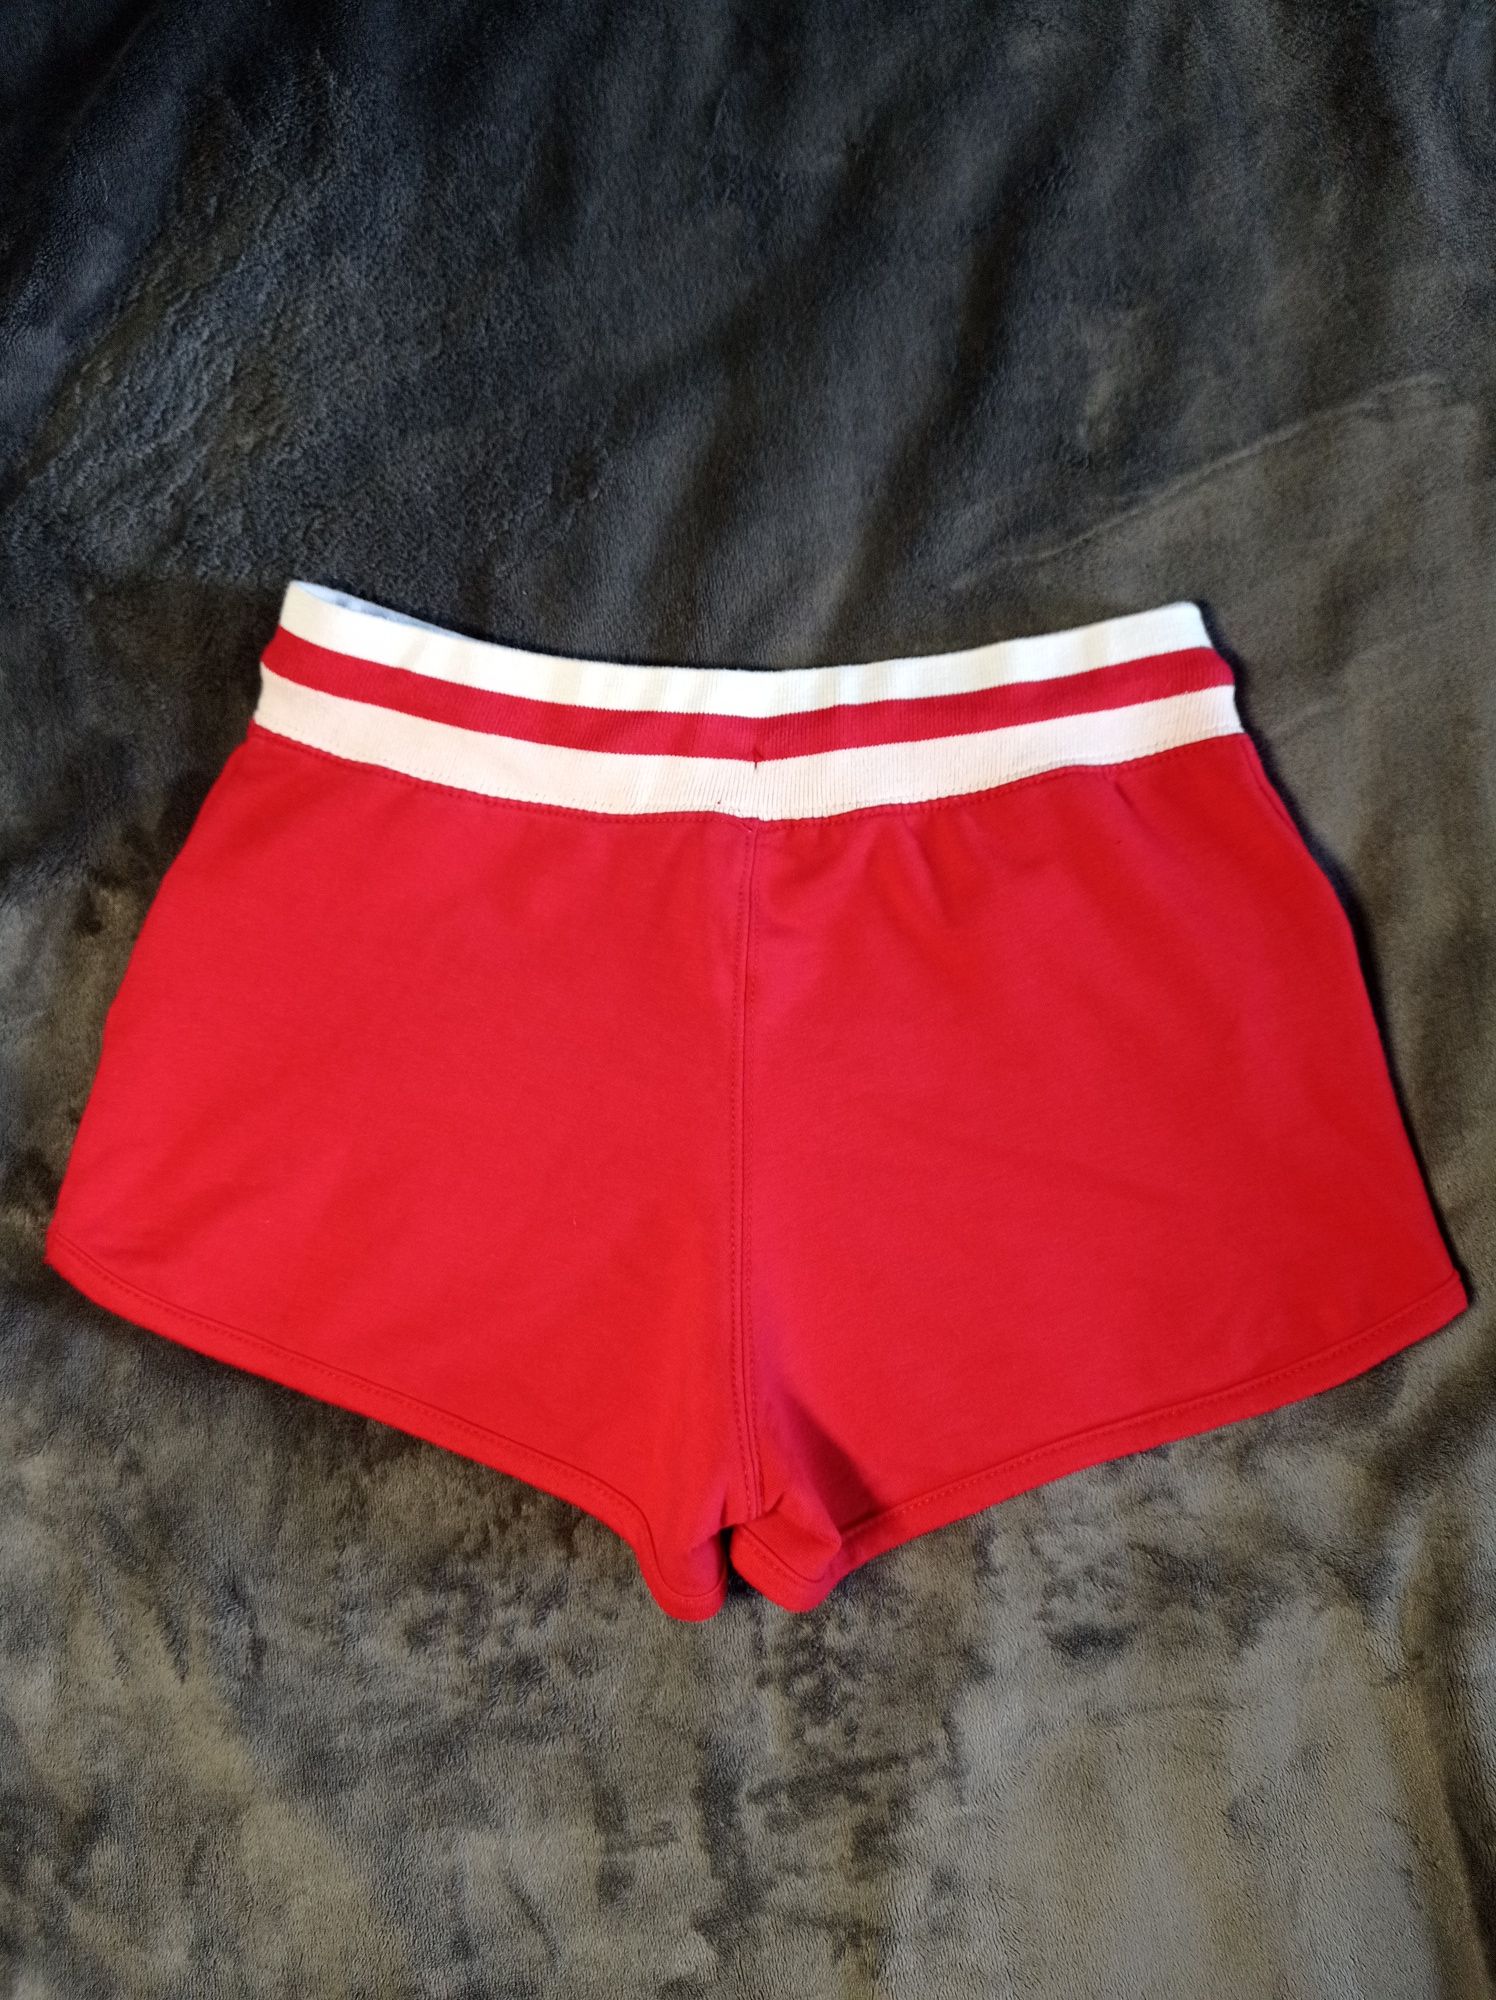 Szorty 4F rozmiar 34 XS czerwone bawełniane spodenki sportowe damskie